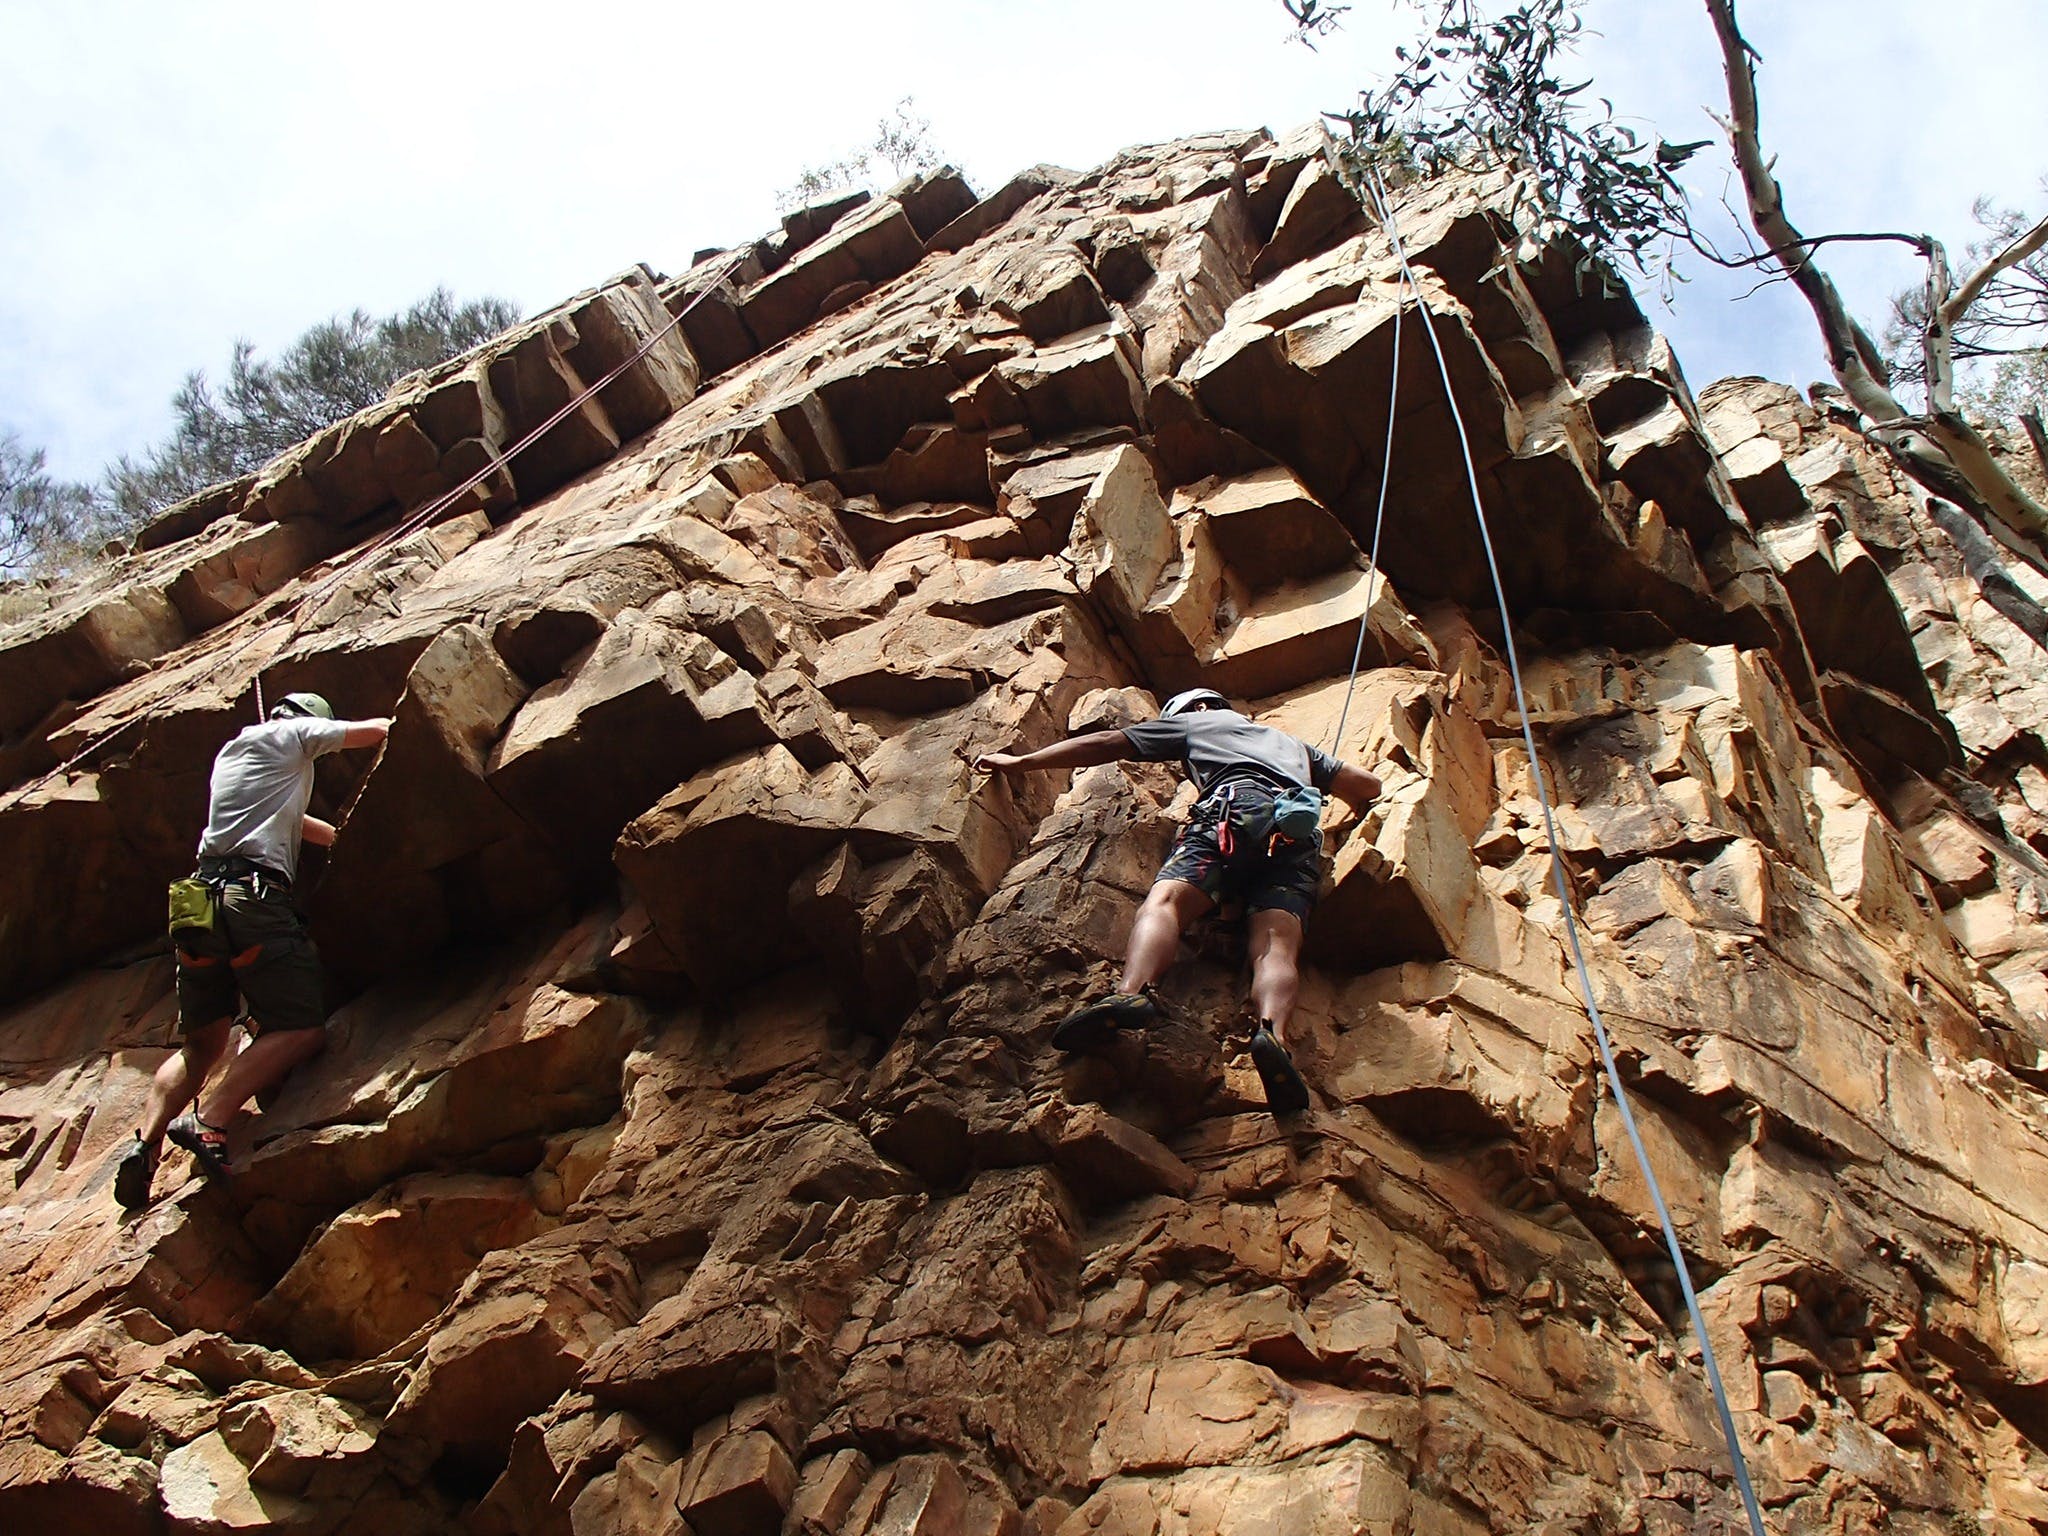 Rock Climbing in Morialta - Tourism Adelaide